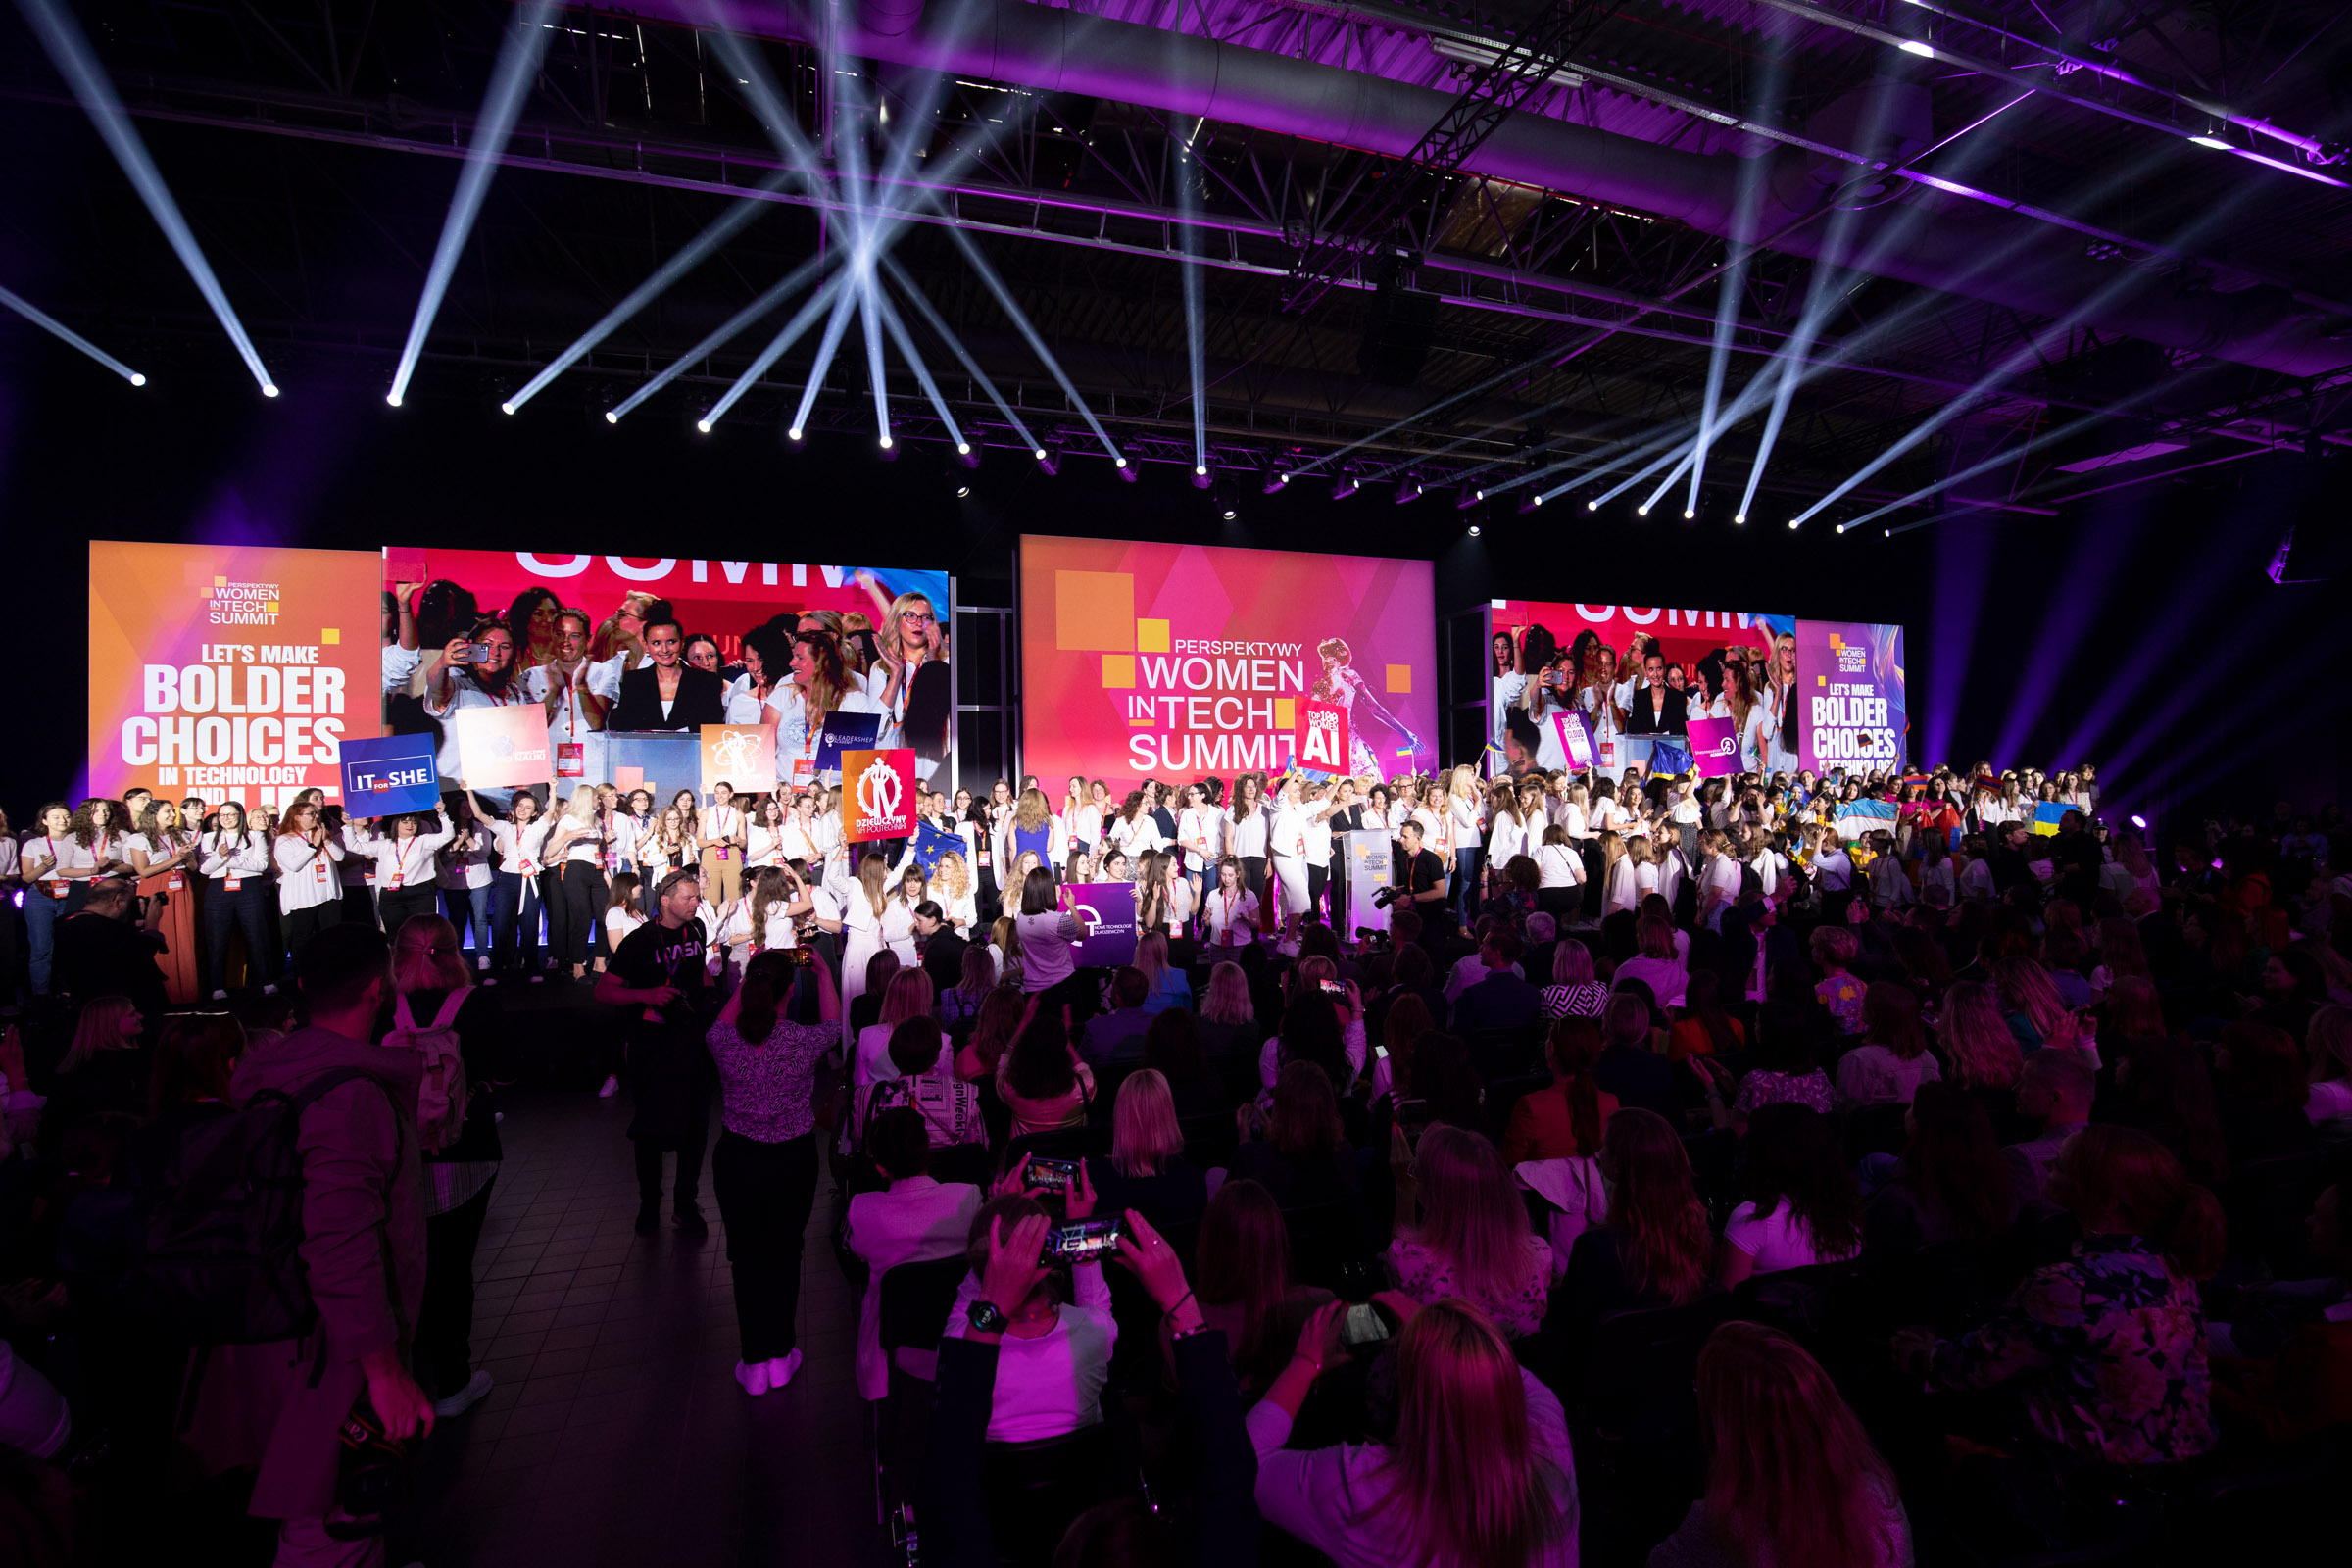 Perspektywy Women in Tech Summit: викладачки та студентка політехніки долучилися до найбільшої події в Європі для жінок у техніці та ІТ